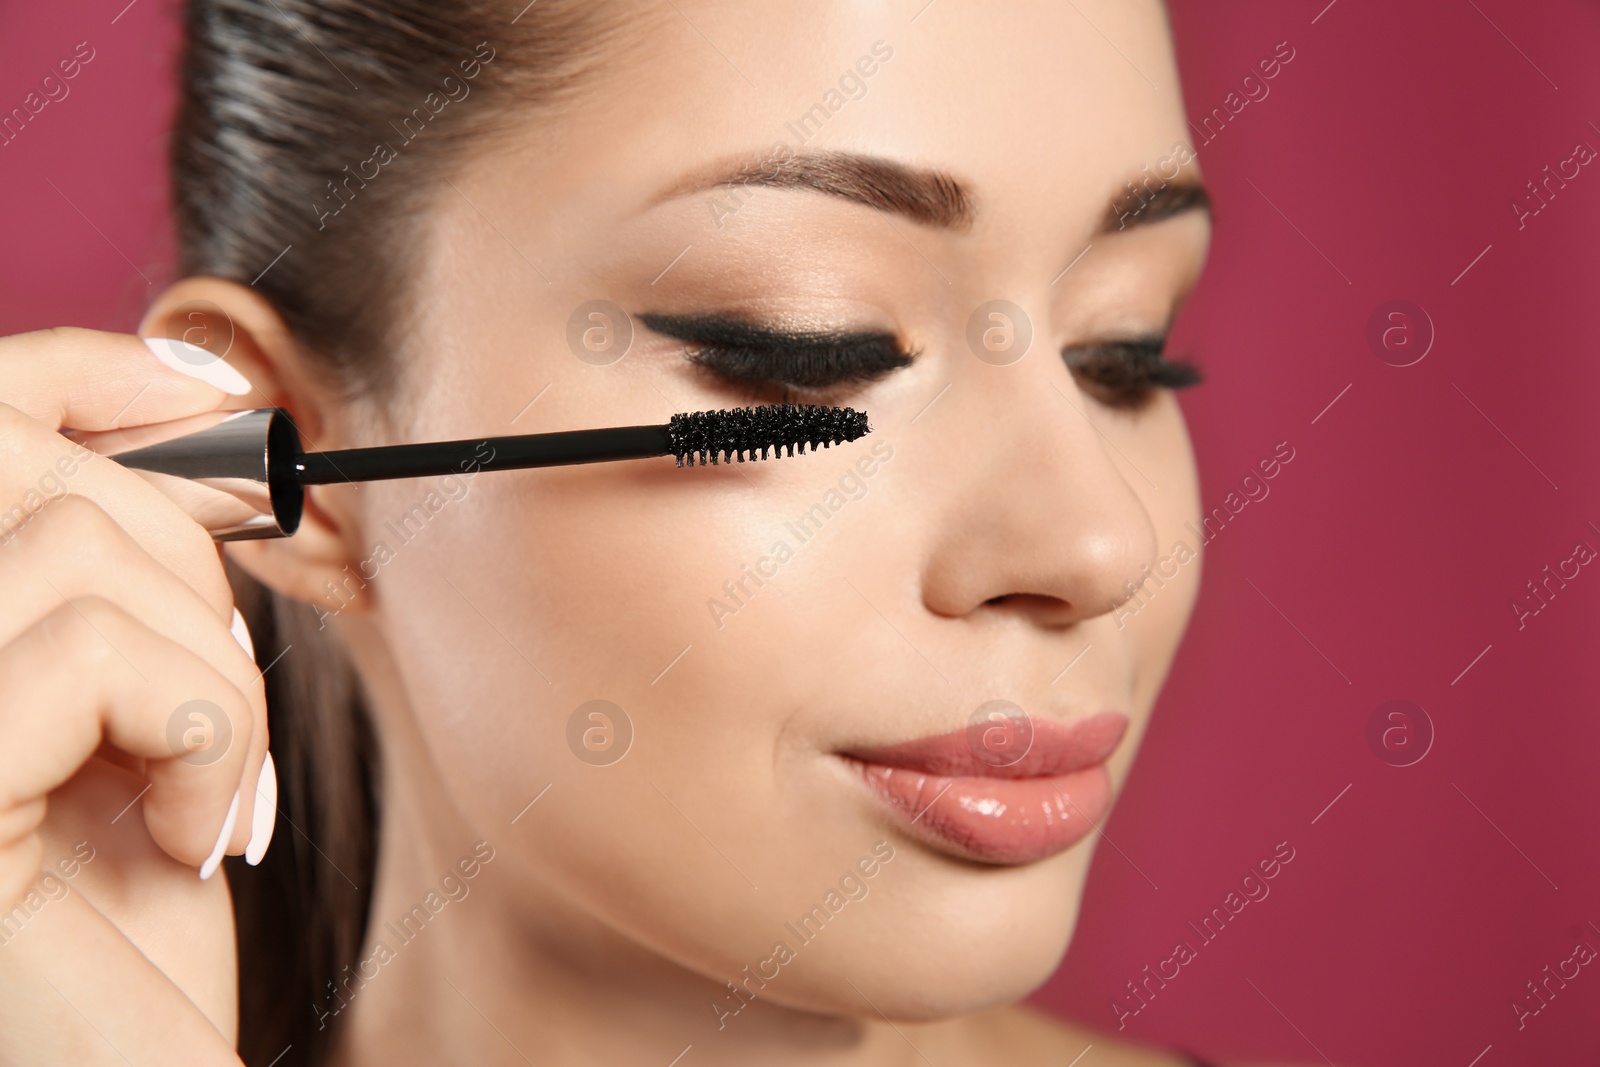 Photo of Beautiful woman applying mascara on pink background, closeup. Stylish makeup